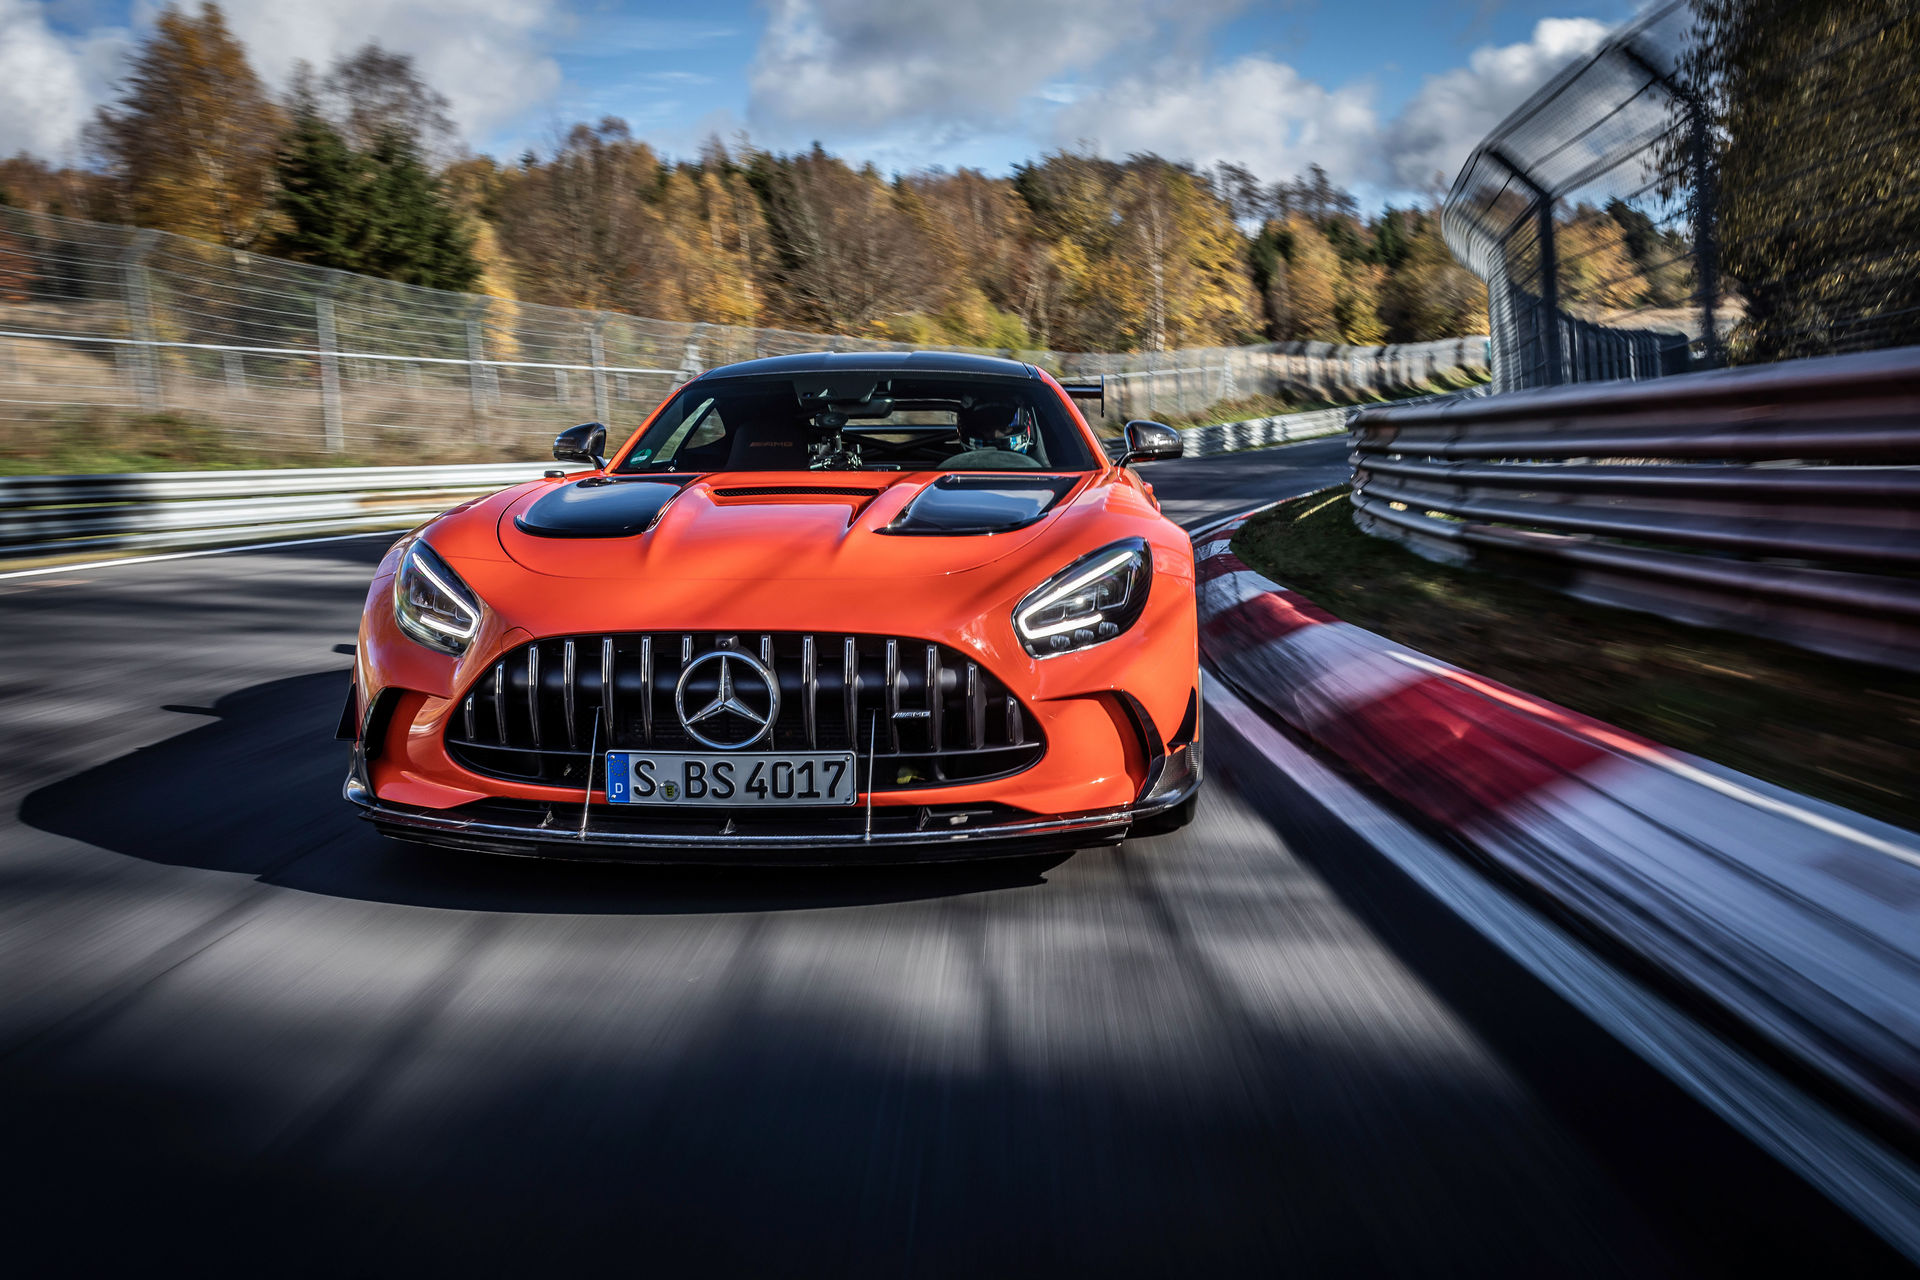 Mercedes-AMG GT Black Series najszybszym seryjnym autem na Nürburgringu